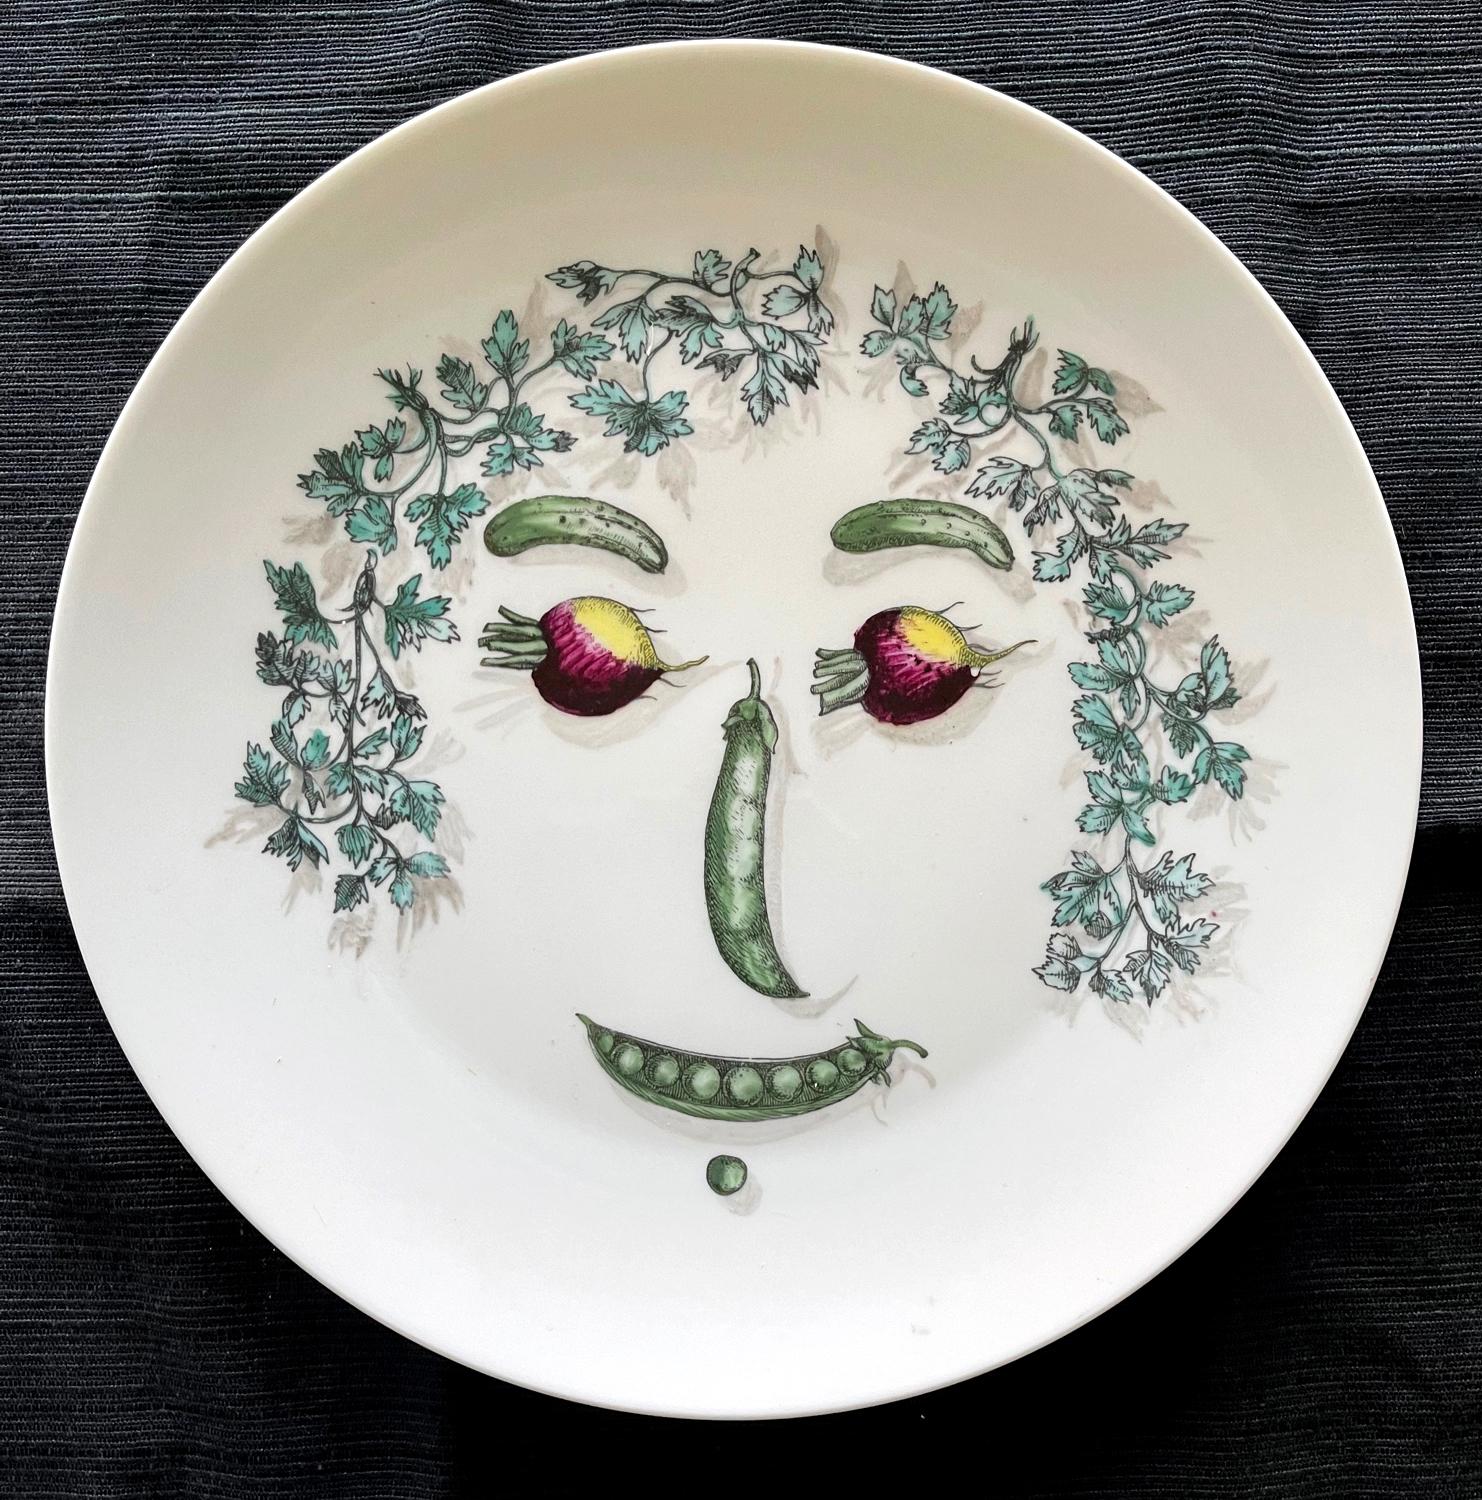 Assiette en porcelaine Fornasetti avec un visage composé de légumes arrangés. Estampillé 